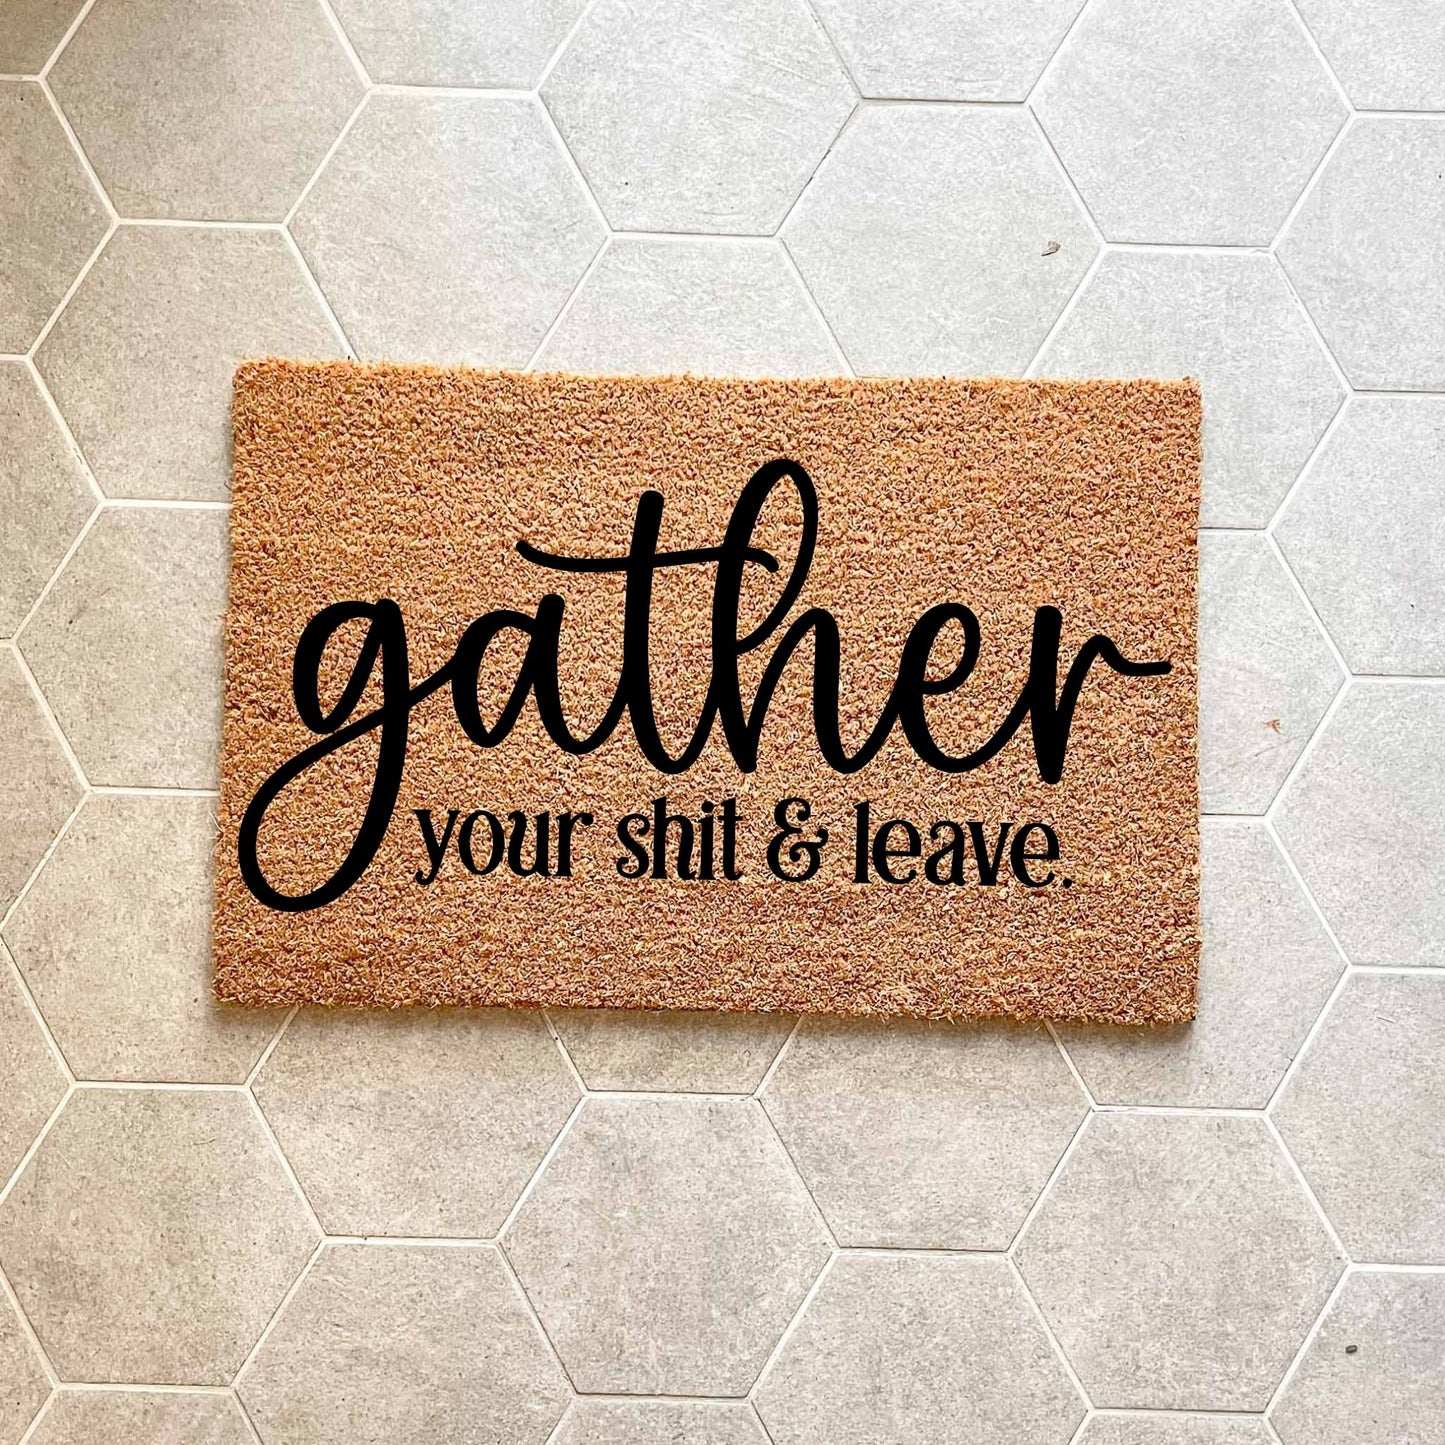 Gather your shit and leave doormat, funny doormat, custom doormat, personalised doormat